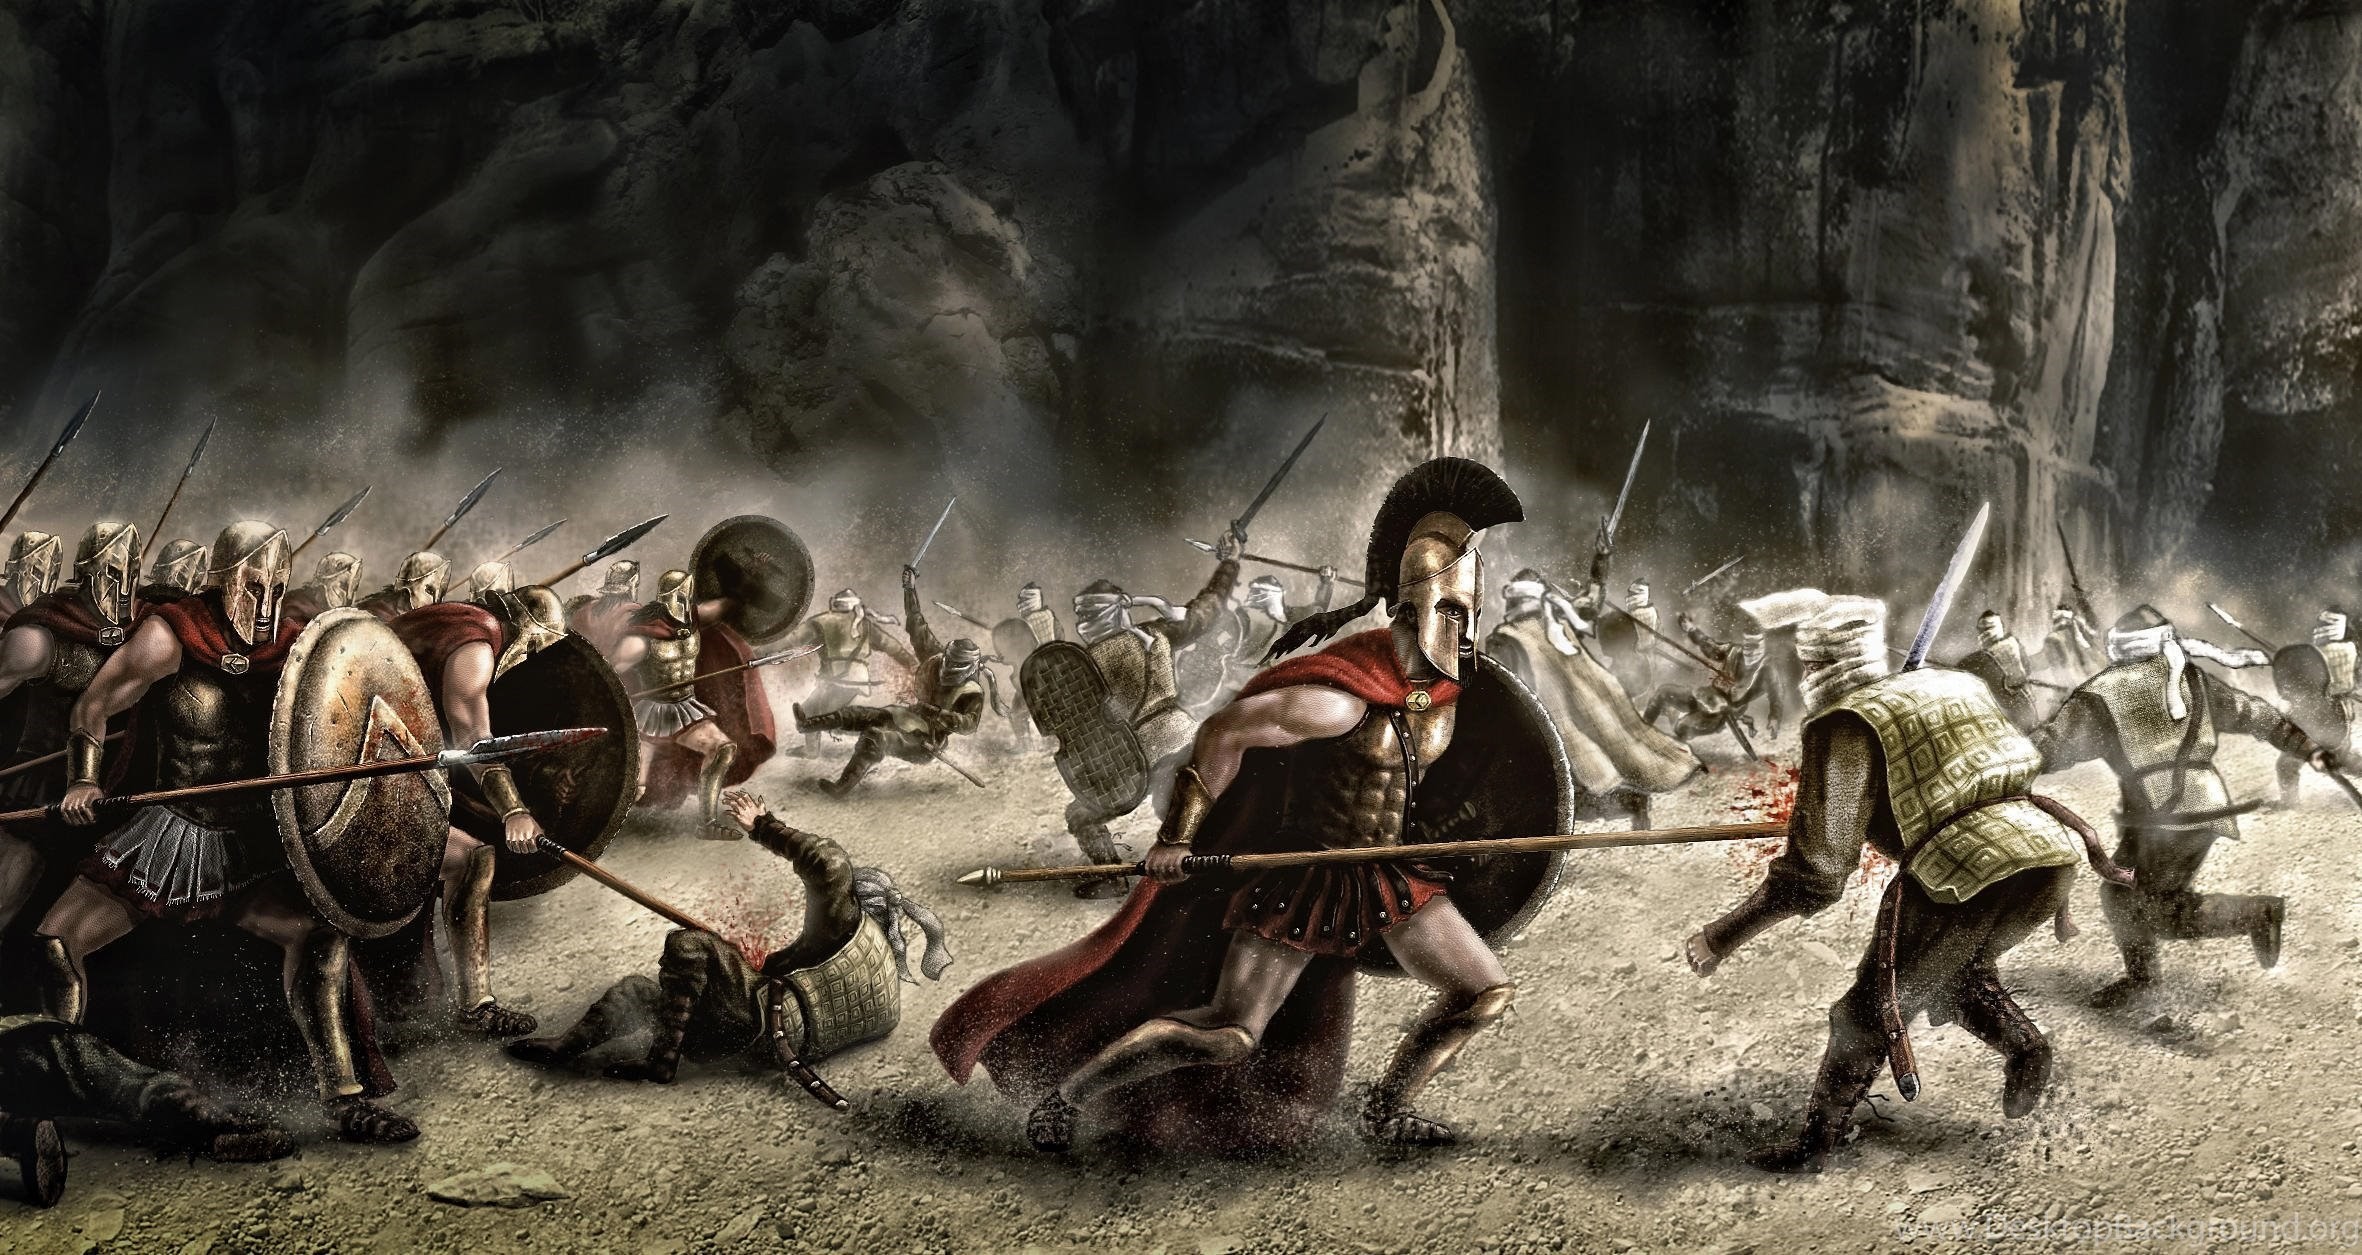 Какой подвиг совершили спартанцы. Фермопильское сражение 300 спартанцев. 300 Спартанцев в Фермопилах. Армия персов 300 спартанцев. 300 Спартанцев бой.